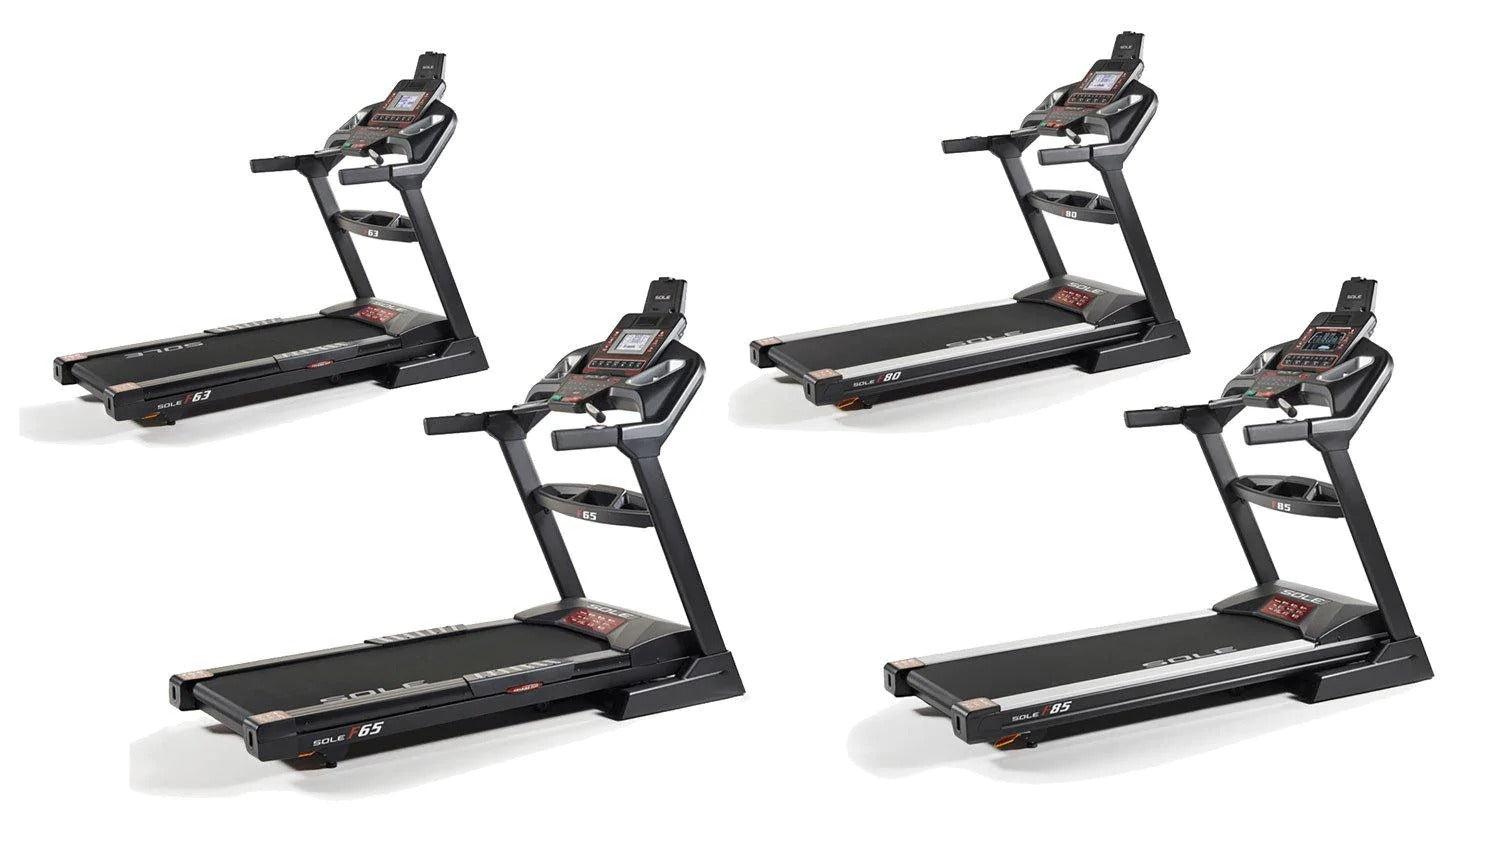 Sole Treadmill Comparison: F63 vs F65 vs F80 vs F85 - How to Pick the Best Folding Treadmill for You - Cardio Online